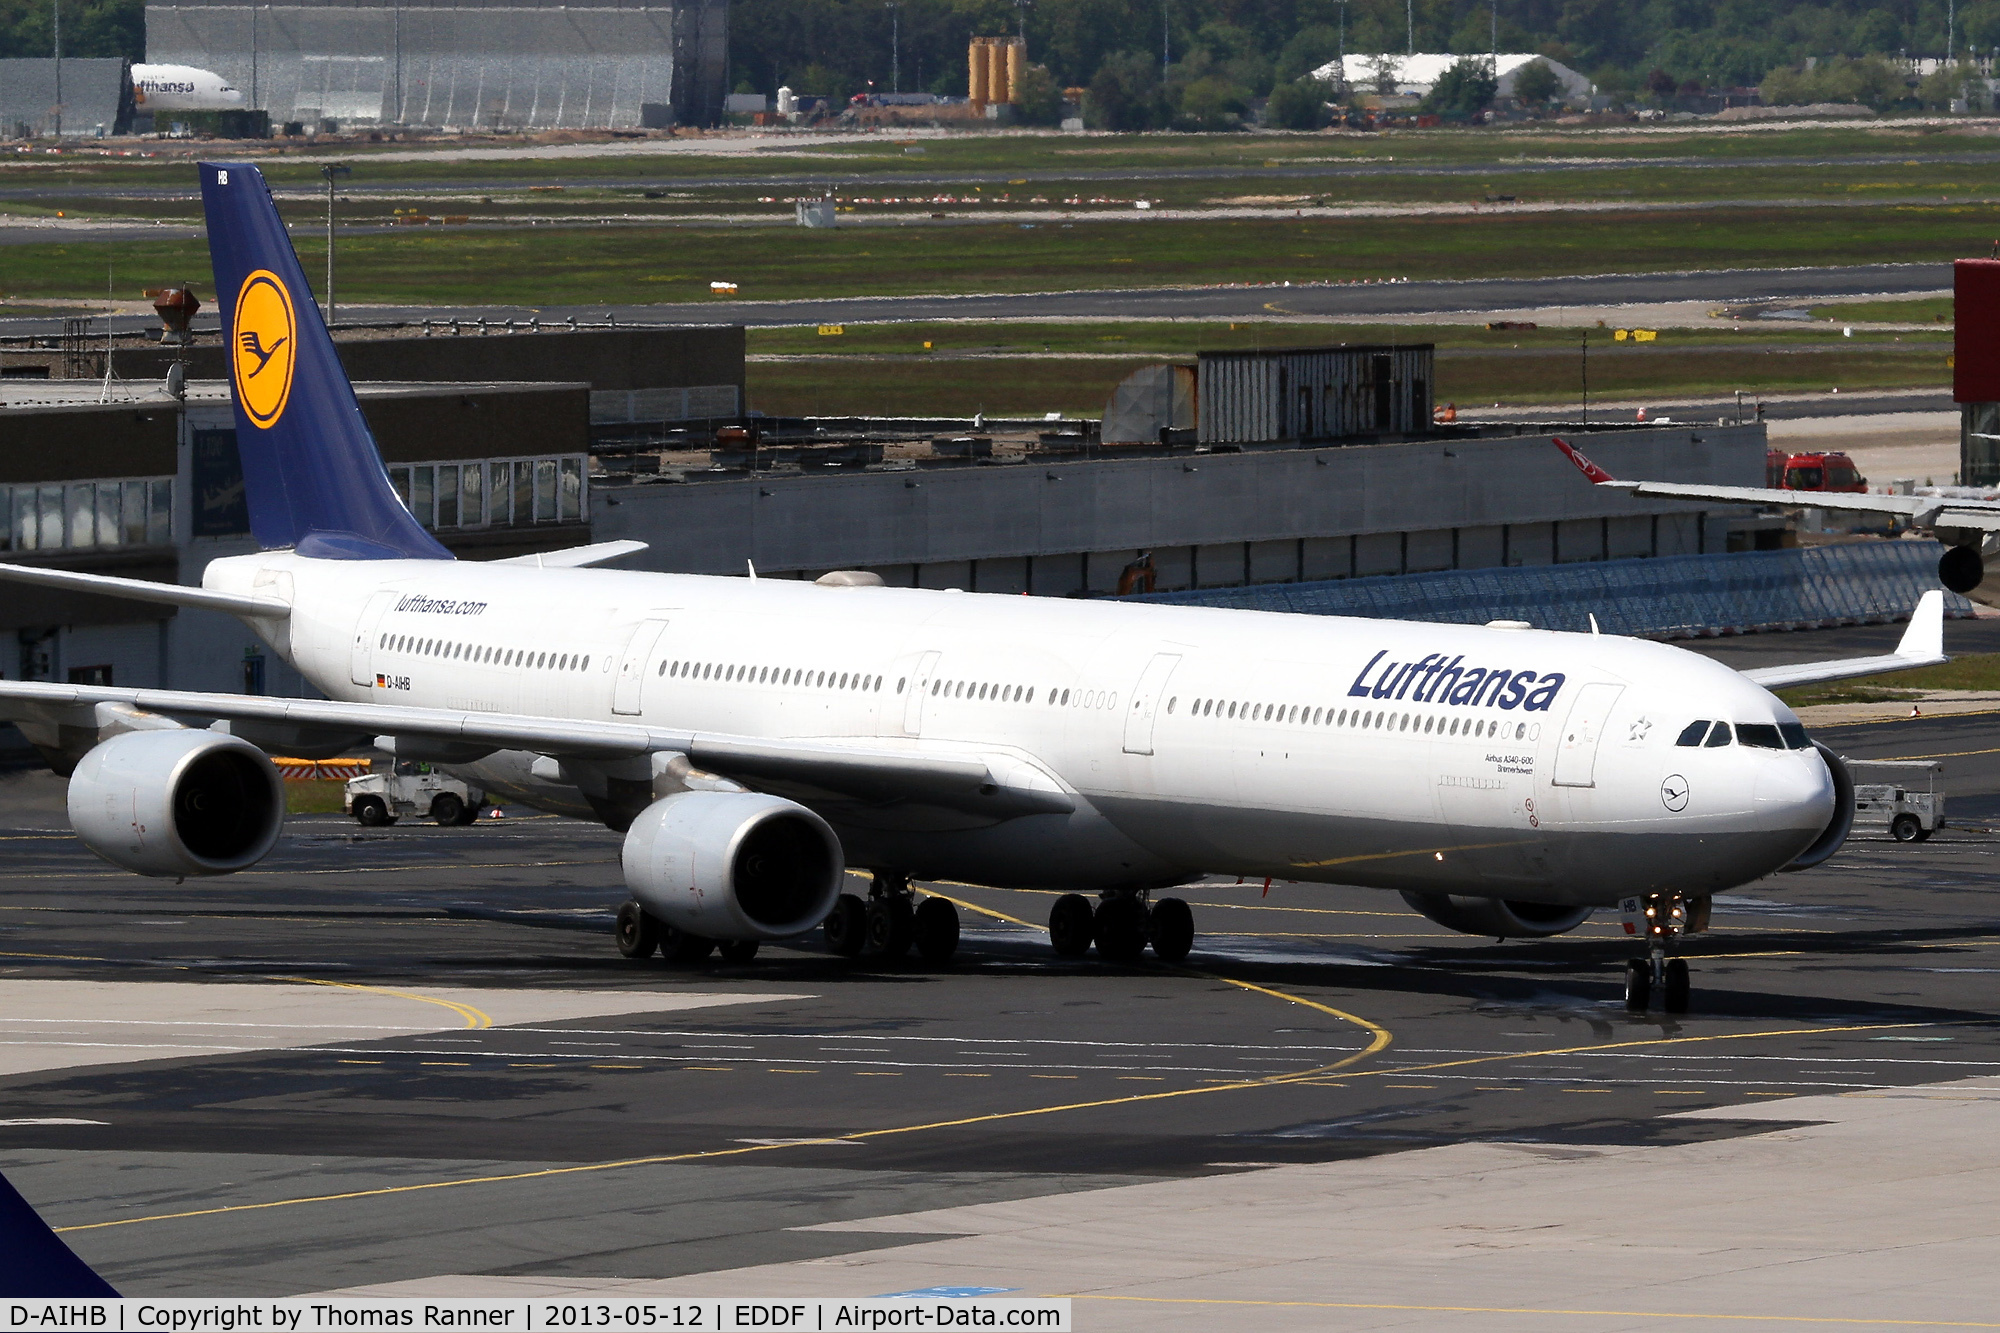 D-AIHB, 2003 Airbus A340-642 C/N 517, Lufthansa A340